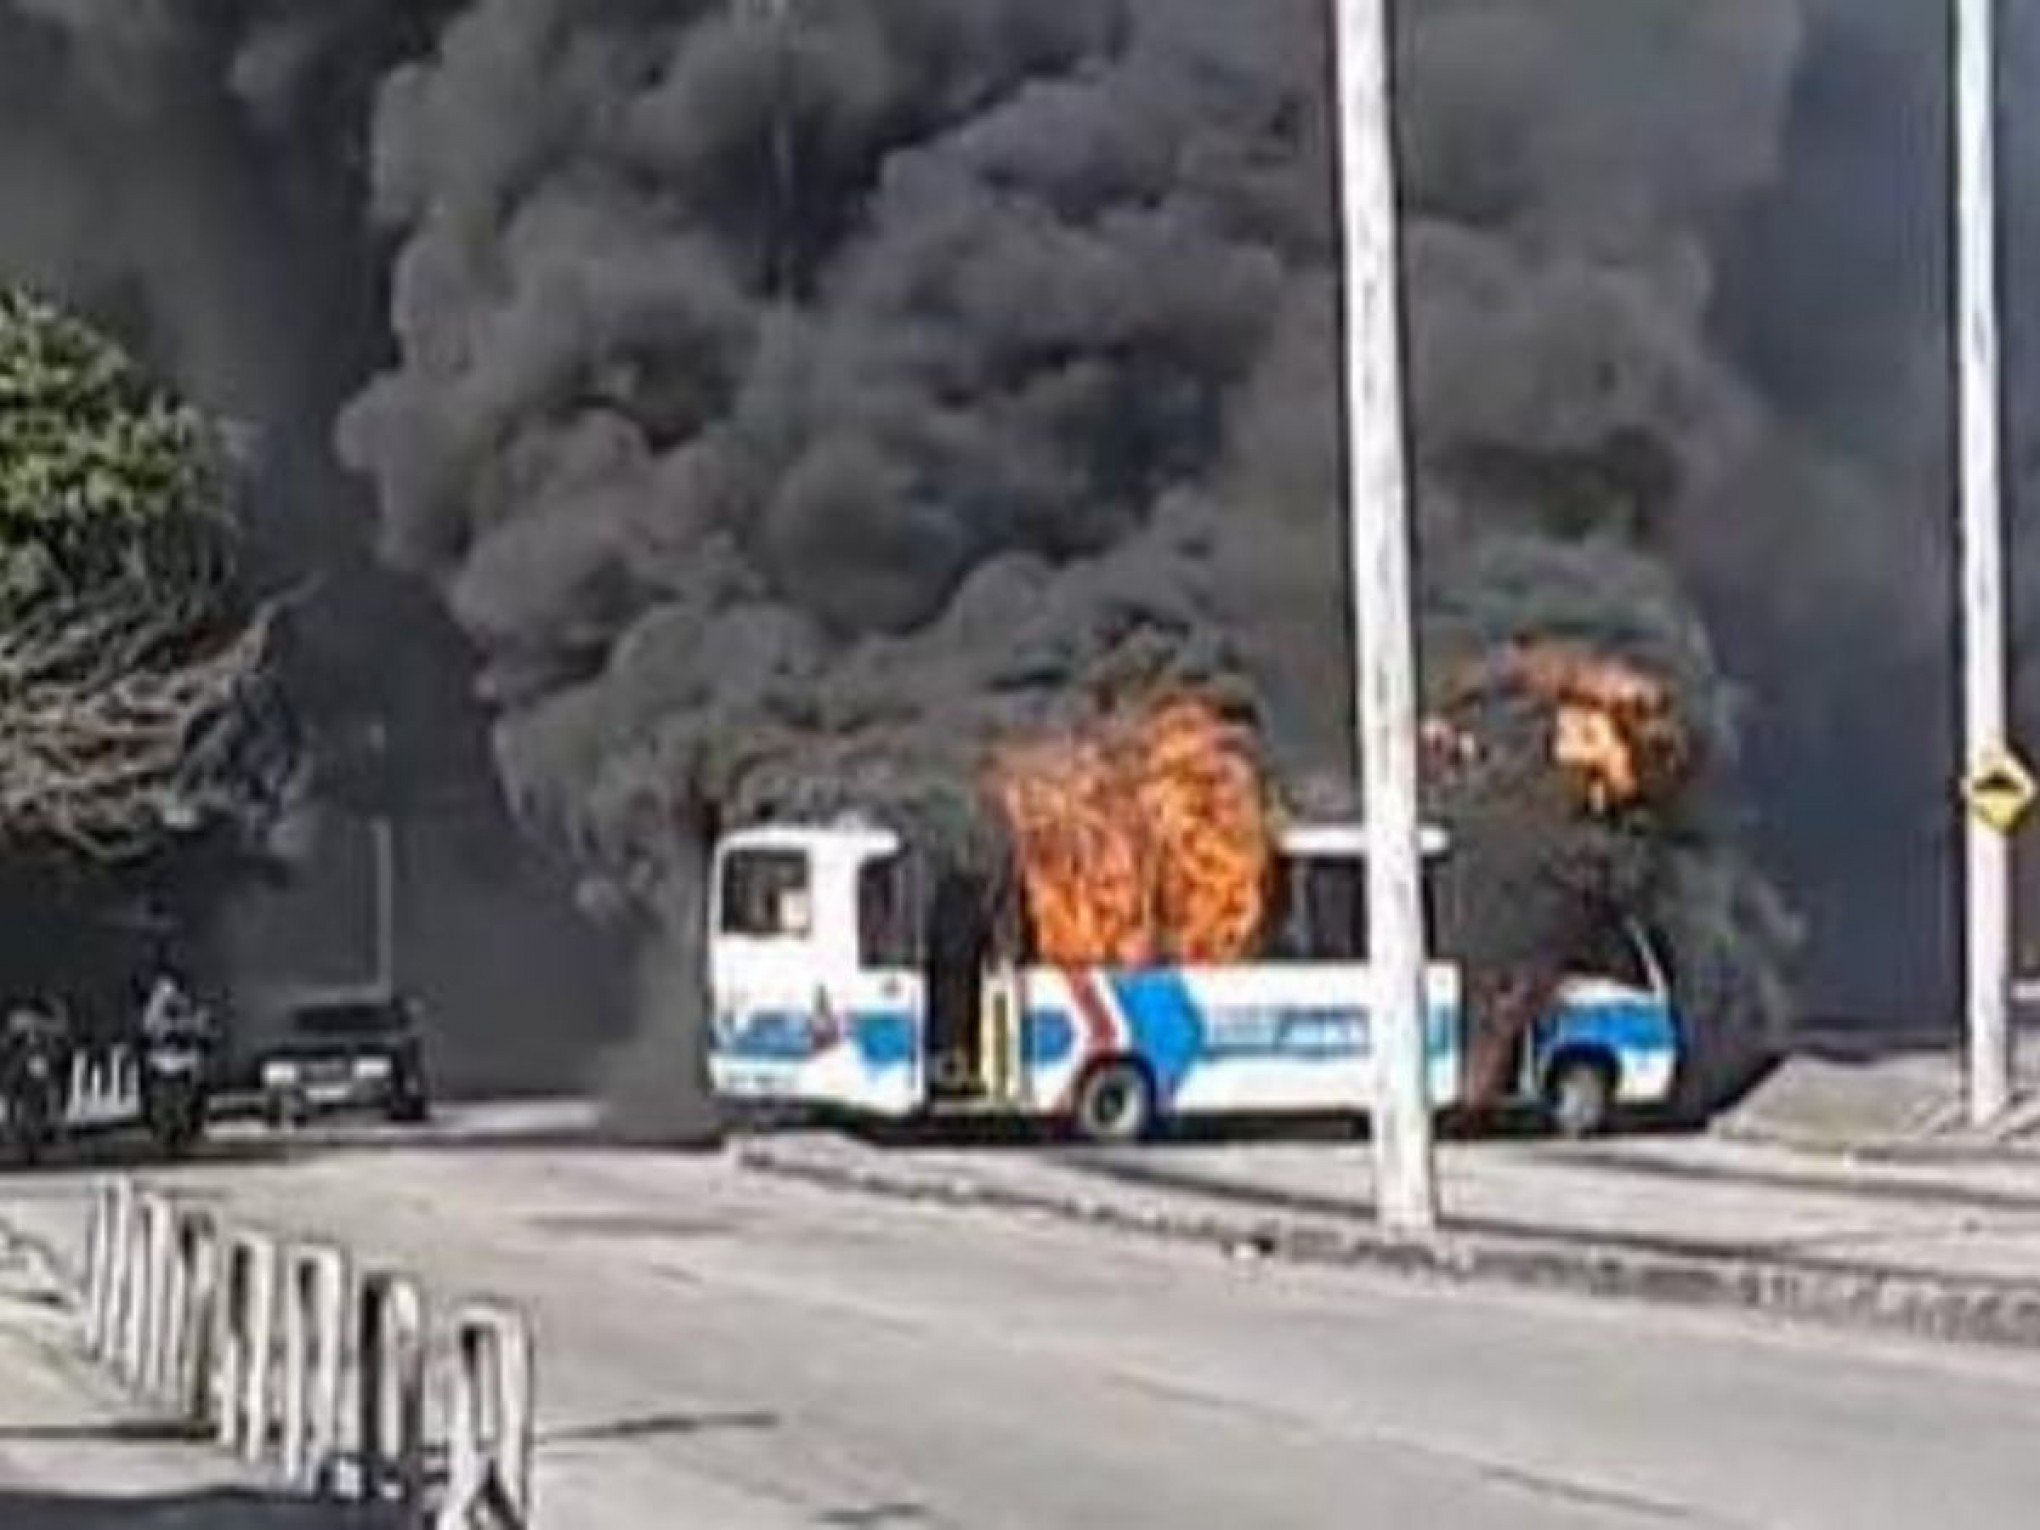 Sindicato confirma que um motorista ficou queimado em ataque a ônibus no Rio; veja estado de saúde